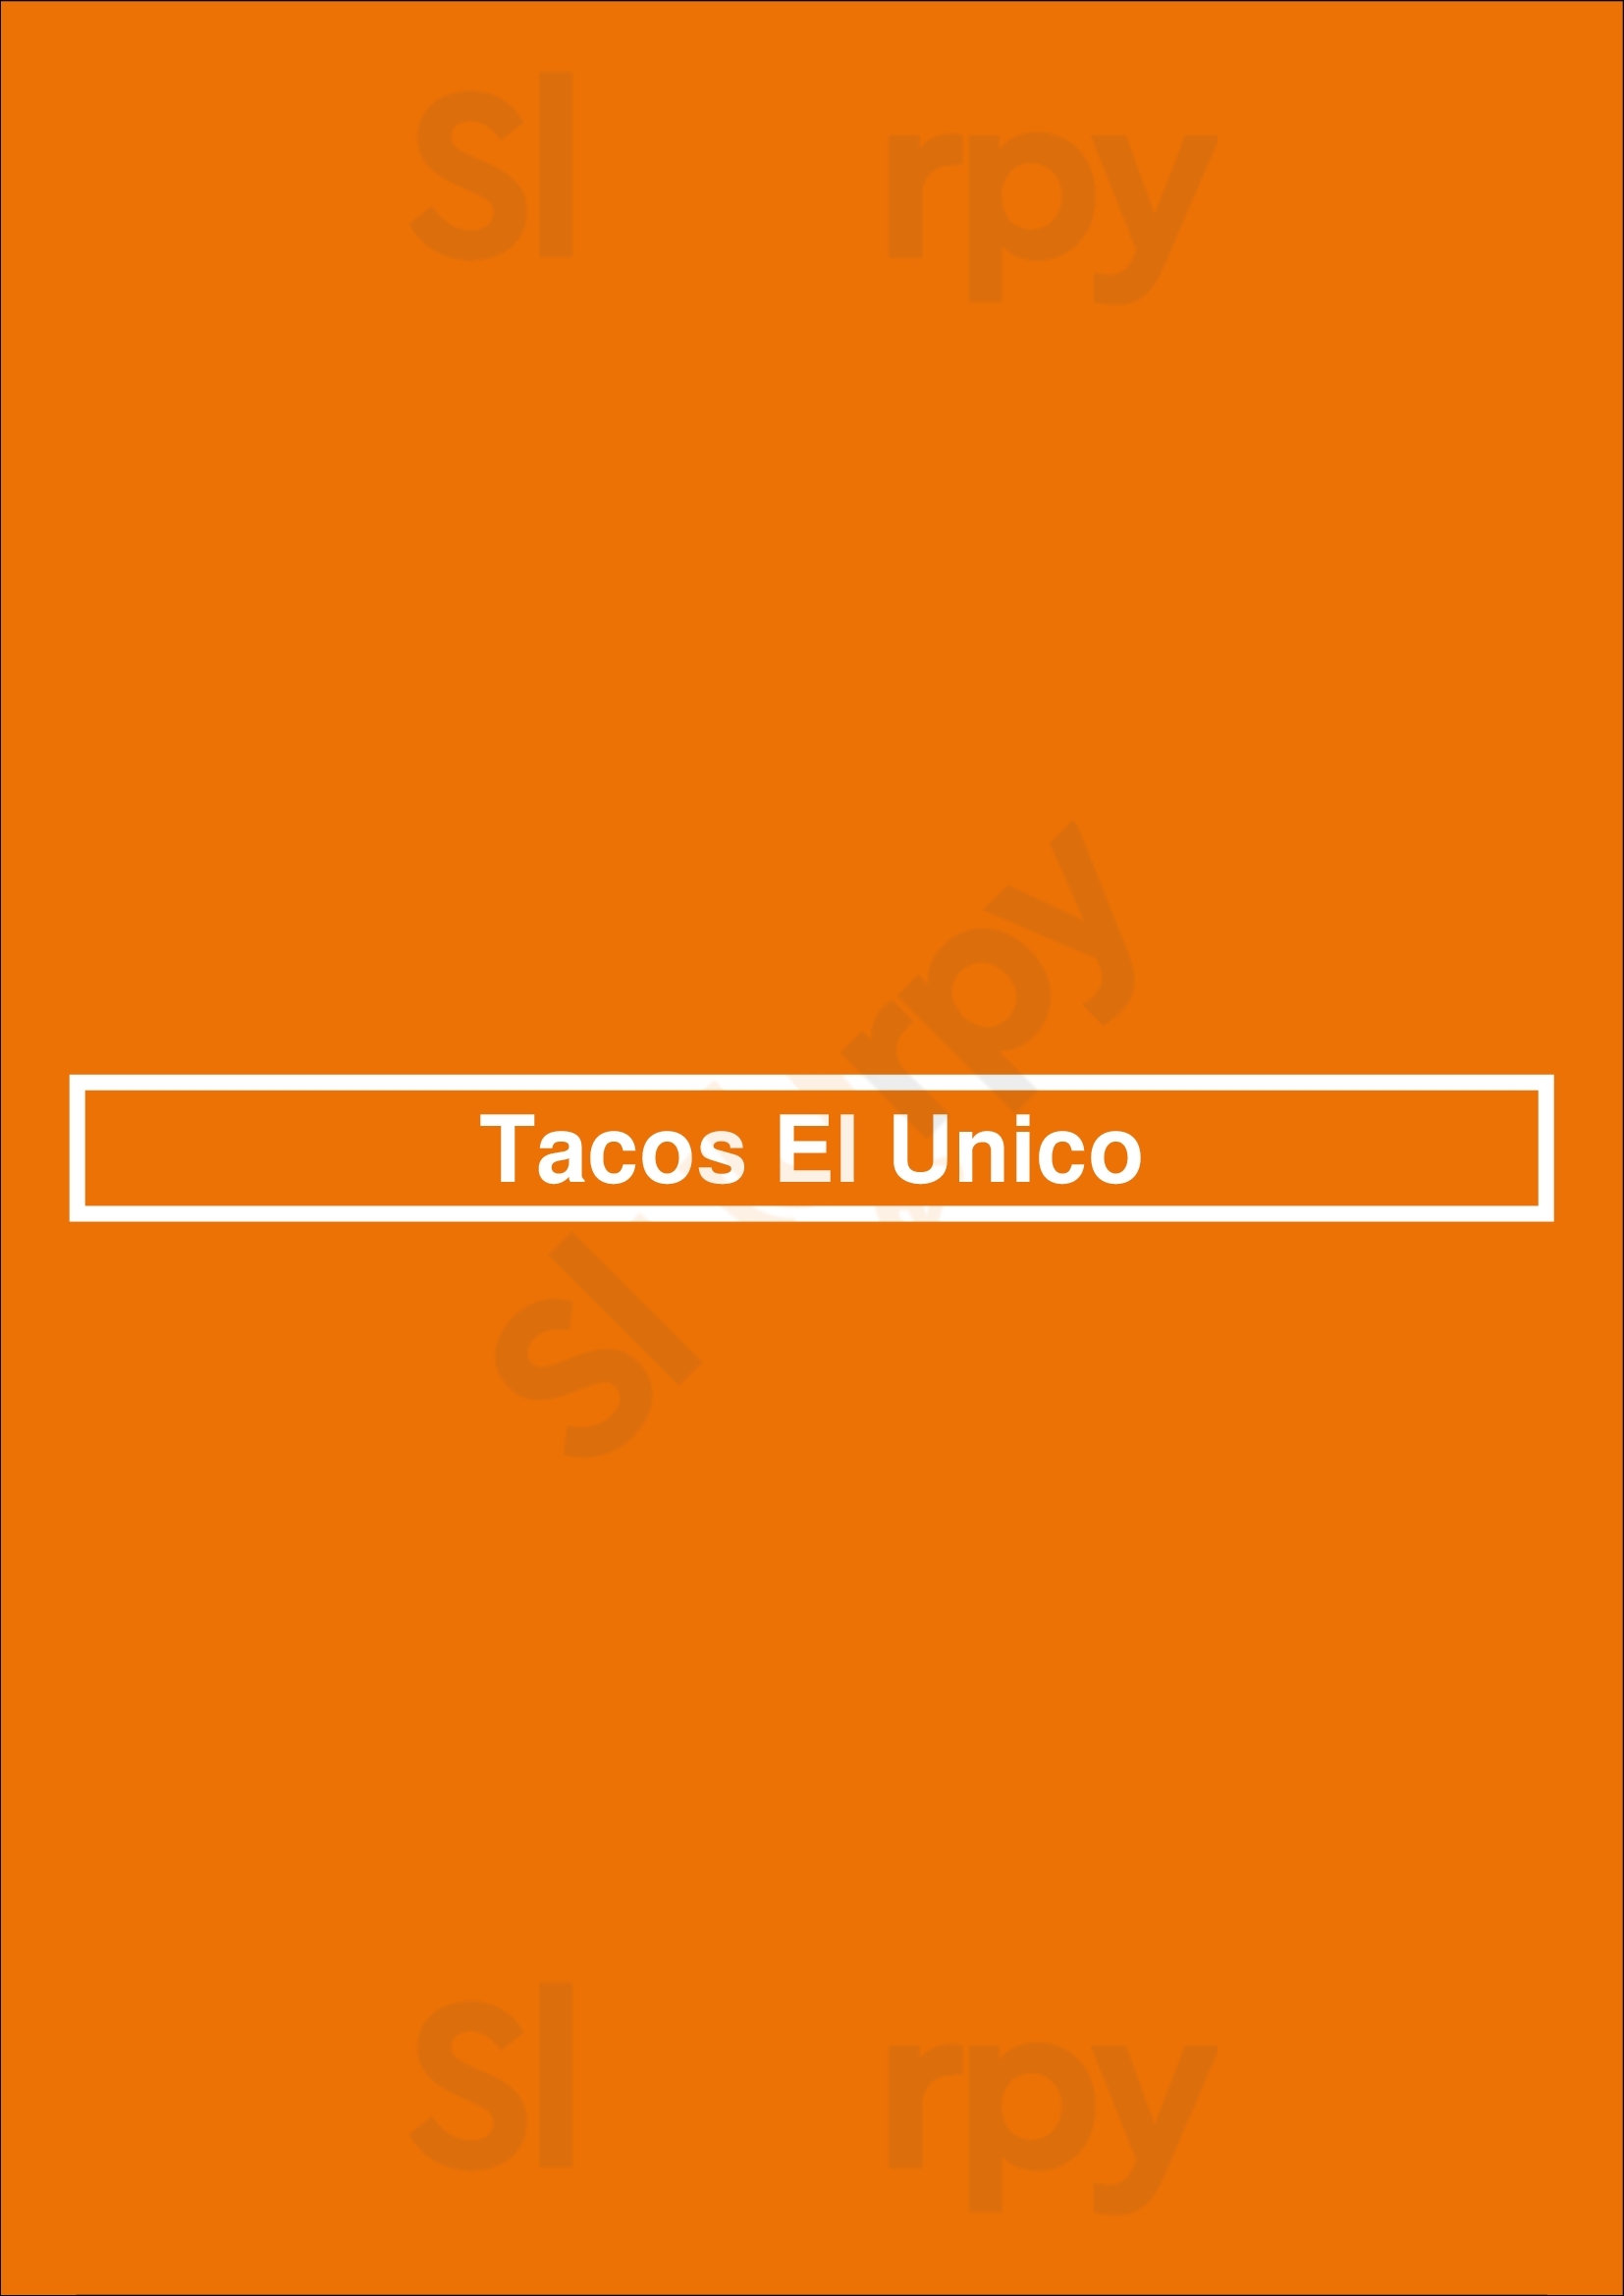 Tacos El Unico Los Angeles Menu - 1